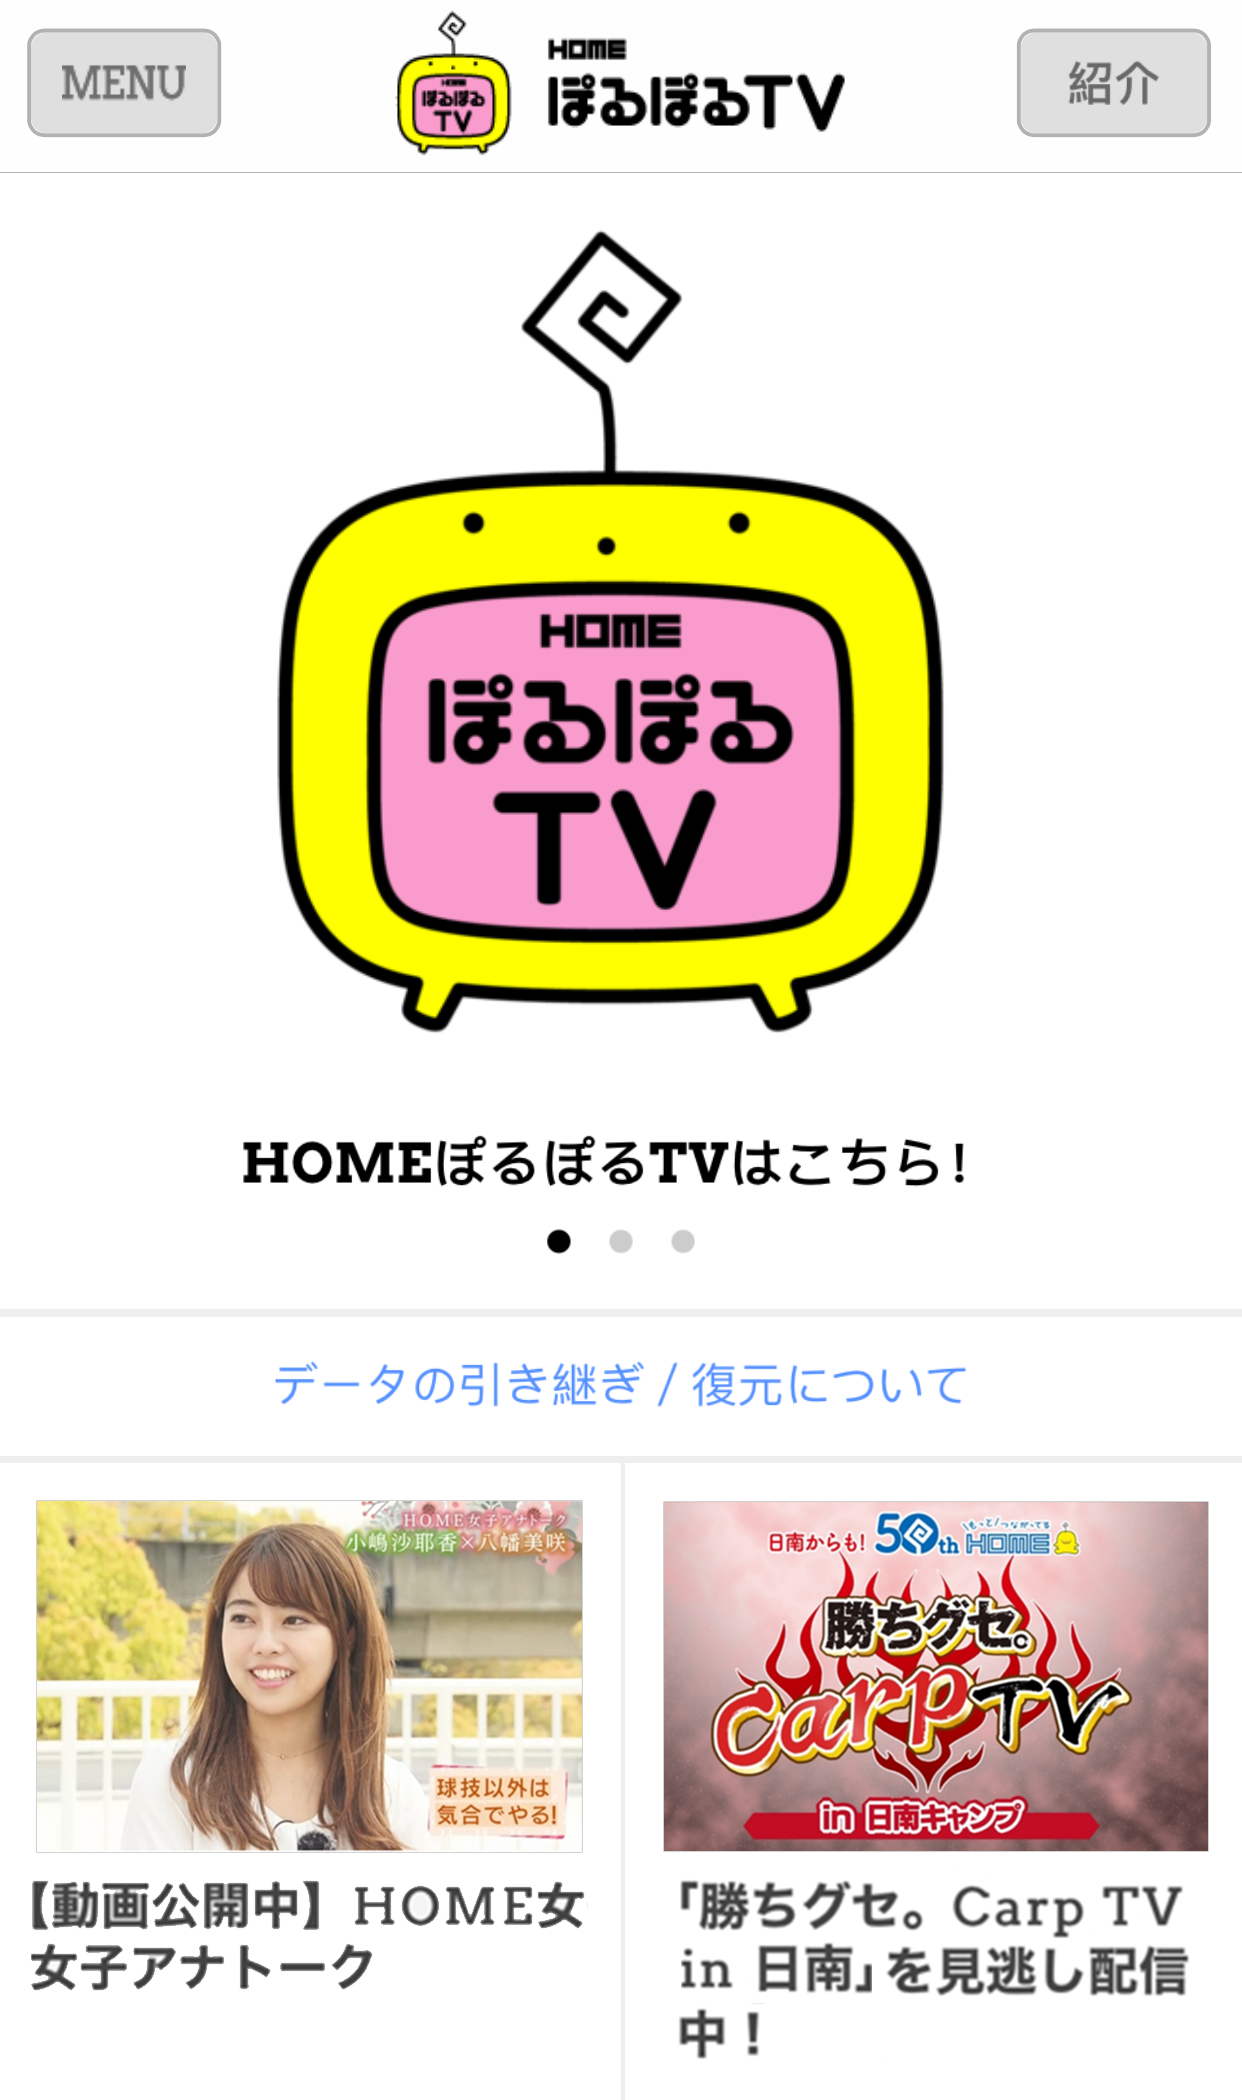 株式会社 広島ホームテレビのスマホアプリ開発